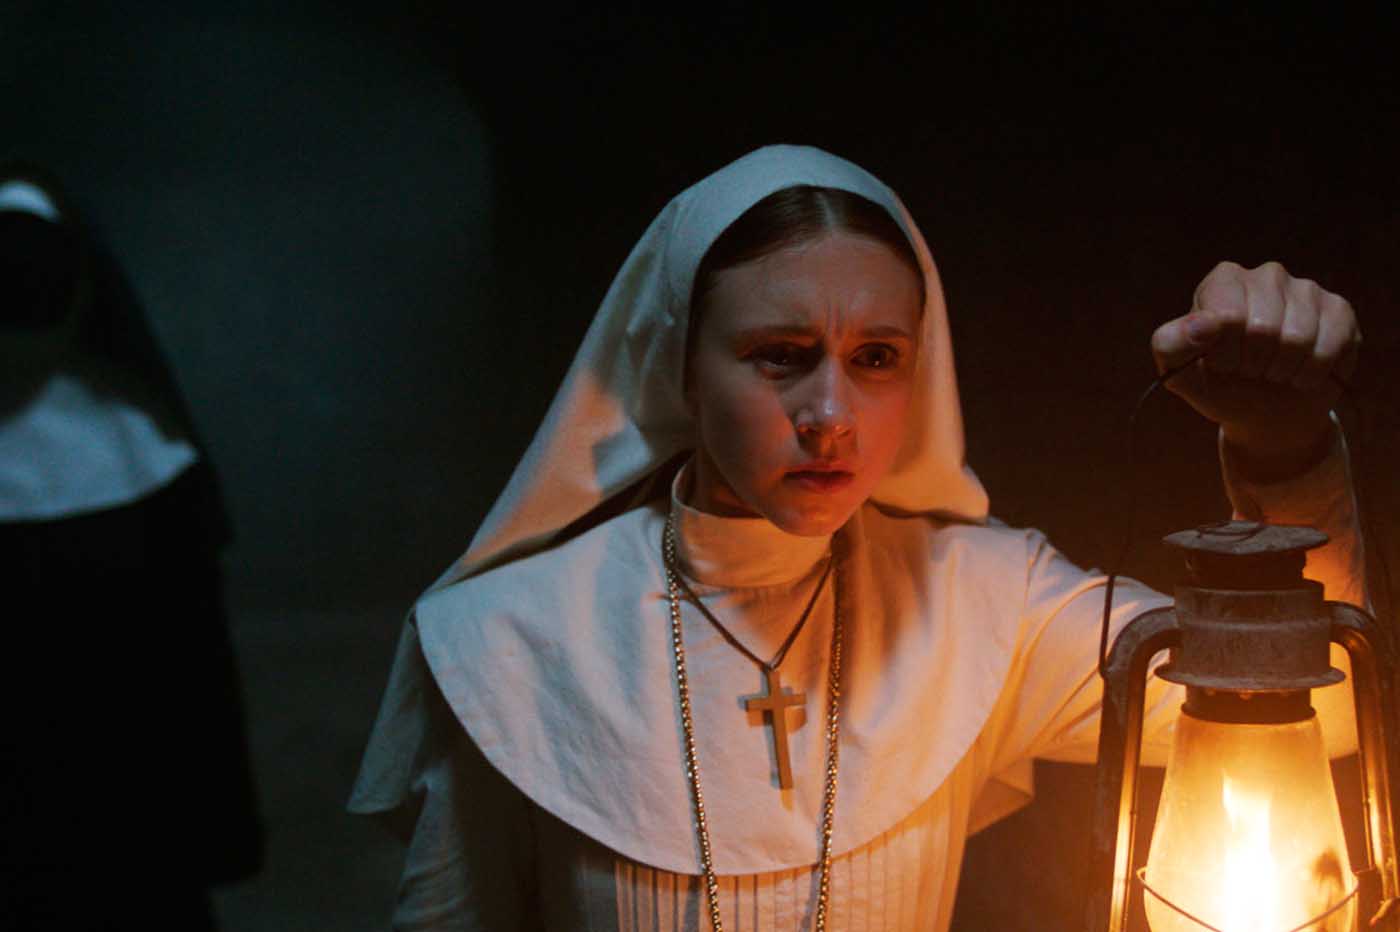 Crítica La monja | Película de terror. Contraste